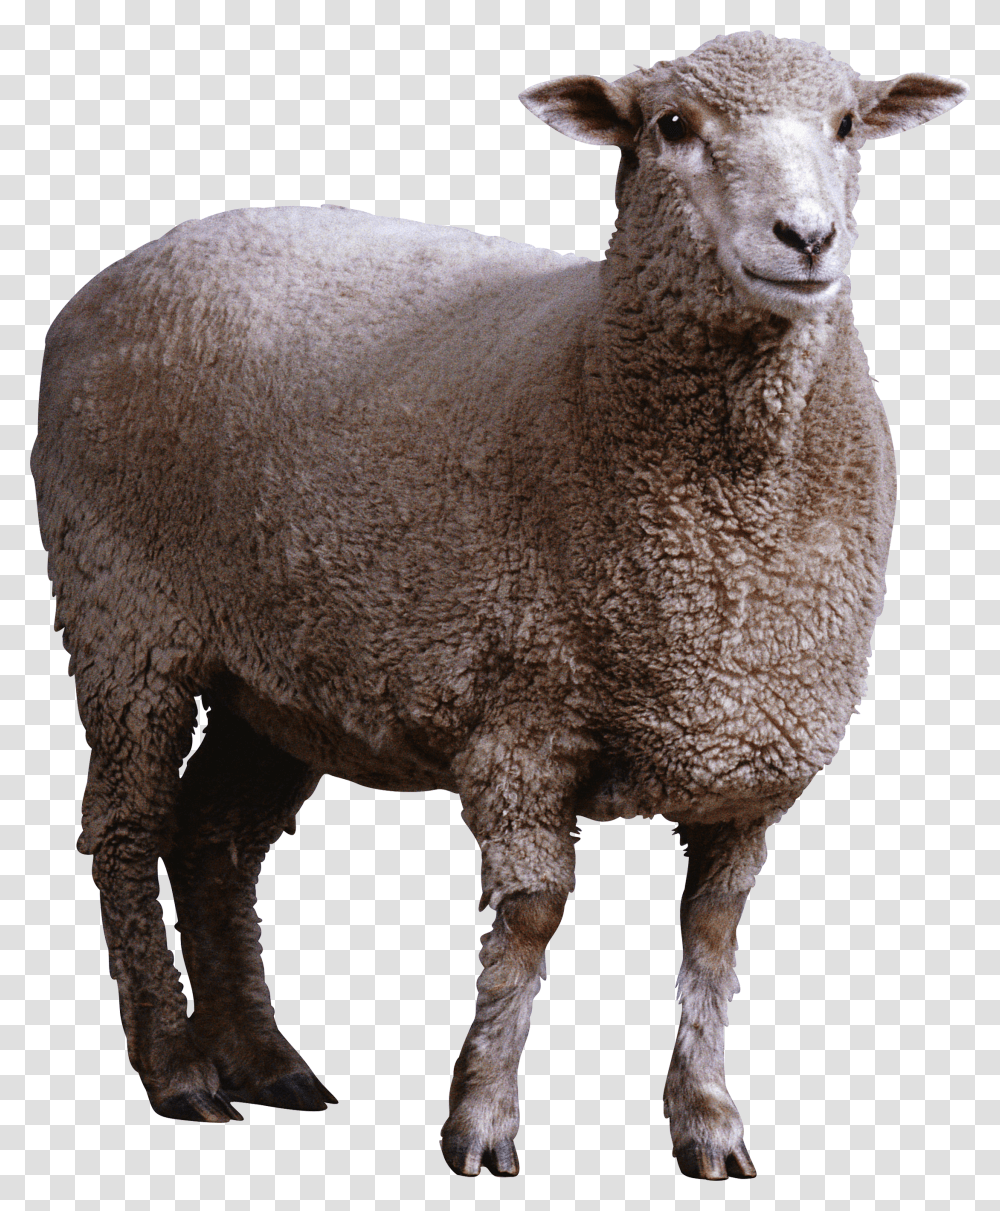 Sheep, Animals Transparent Png